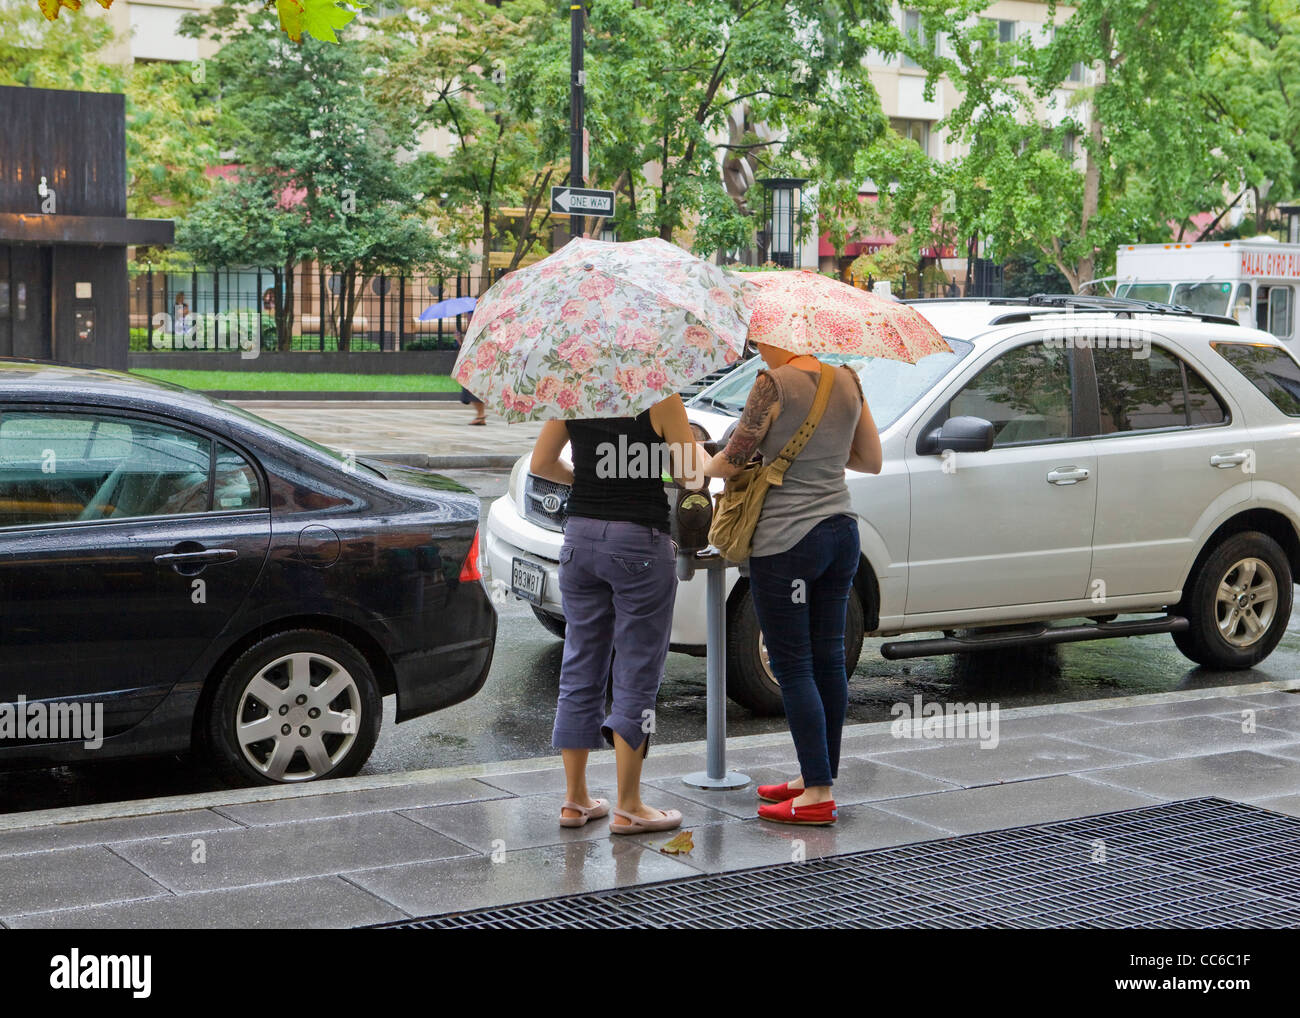 Zwei Frauen, die Fütterung einer Parkuhr halten Sonnenschirme an einem regnerischen Tag Stockfoto